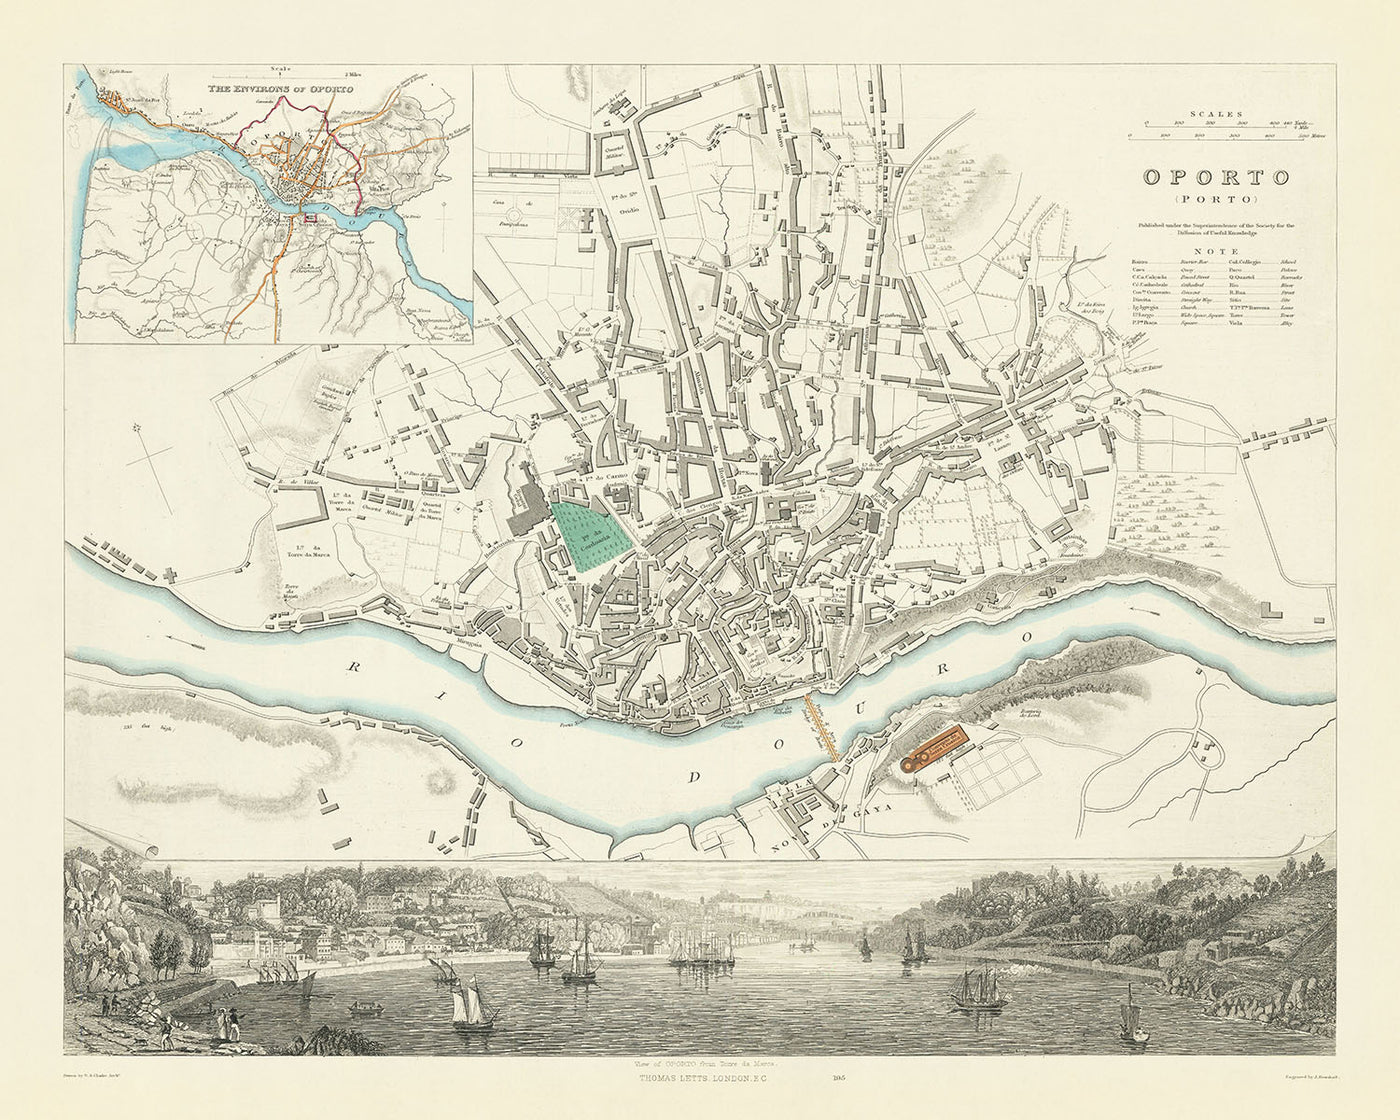 Alte Karte von Porto, 1870: Torre da Marca, Kathedrale, Ribeira-Platz, St. Francis-Kirche, Bischofspalast